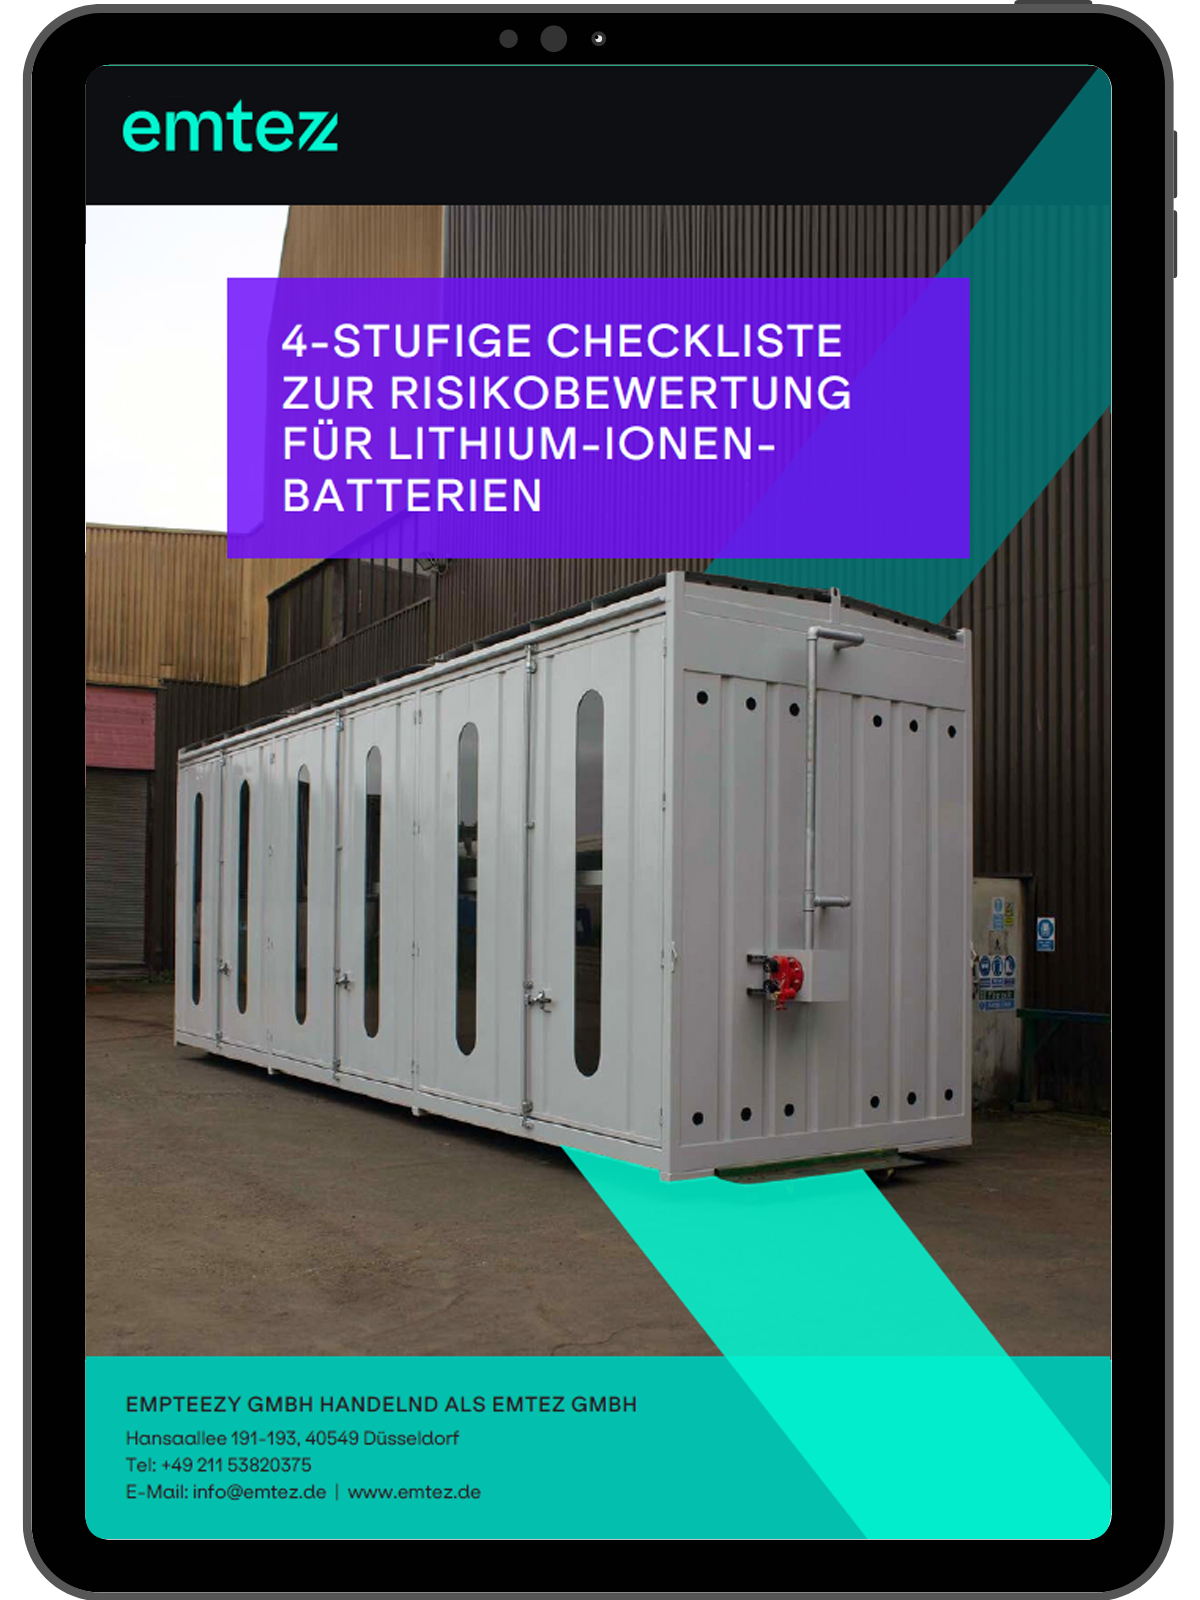 4-stufigen Checkliste zur Risikobewertung für Lithium-Ionen-Batterien